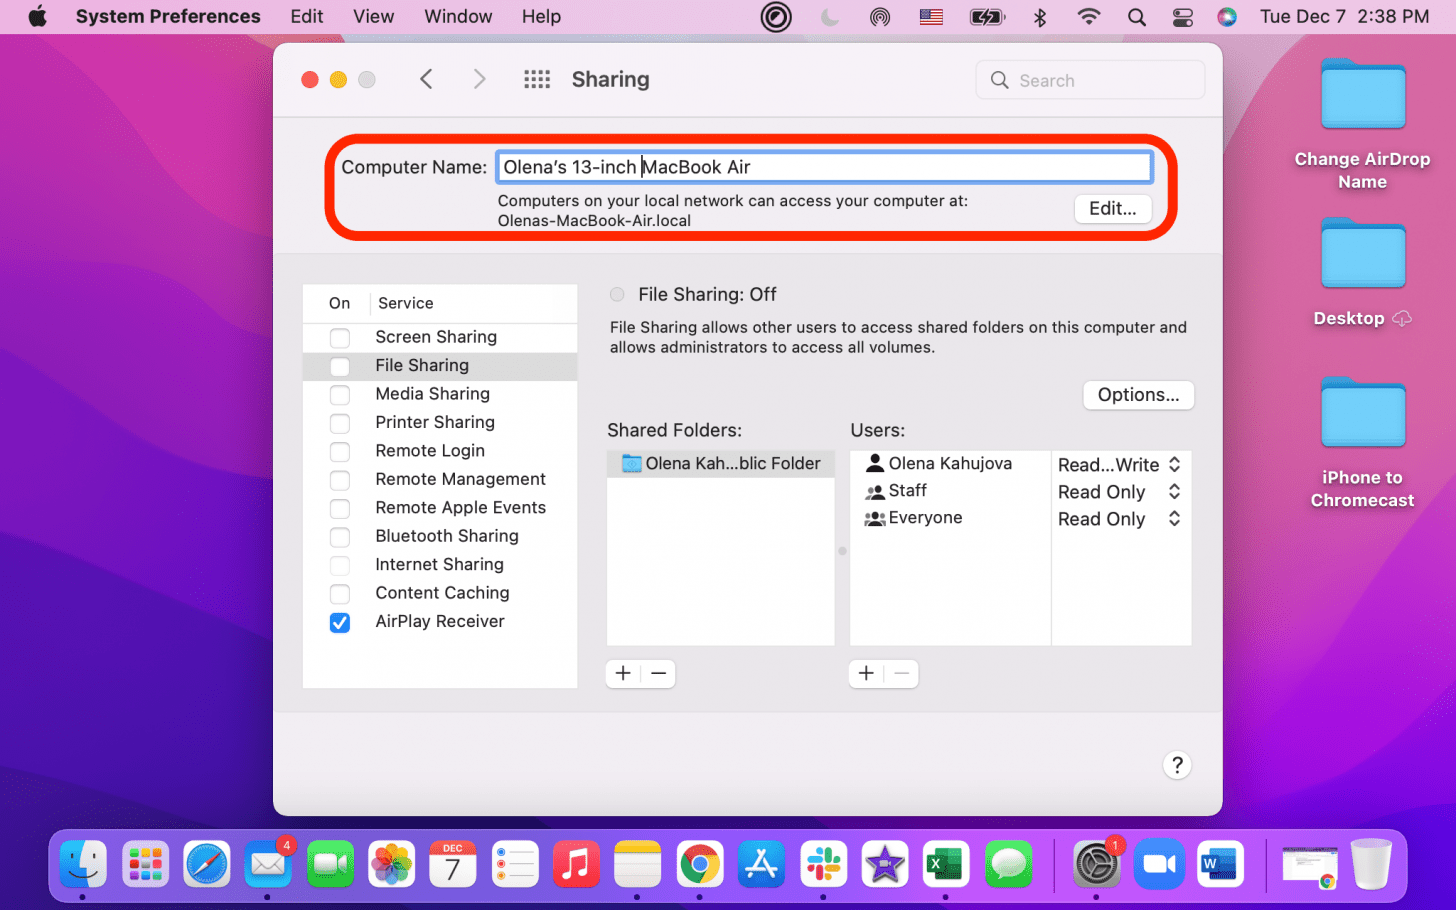 Junto a Nombre de la computadora, puede agregar un nuevo nombre de DropBox para su Mac.